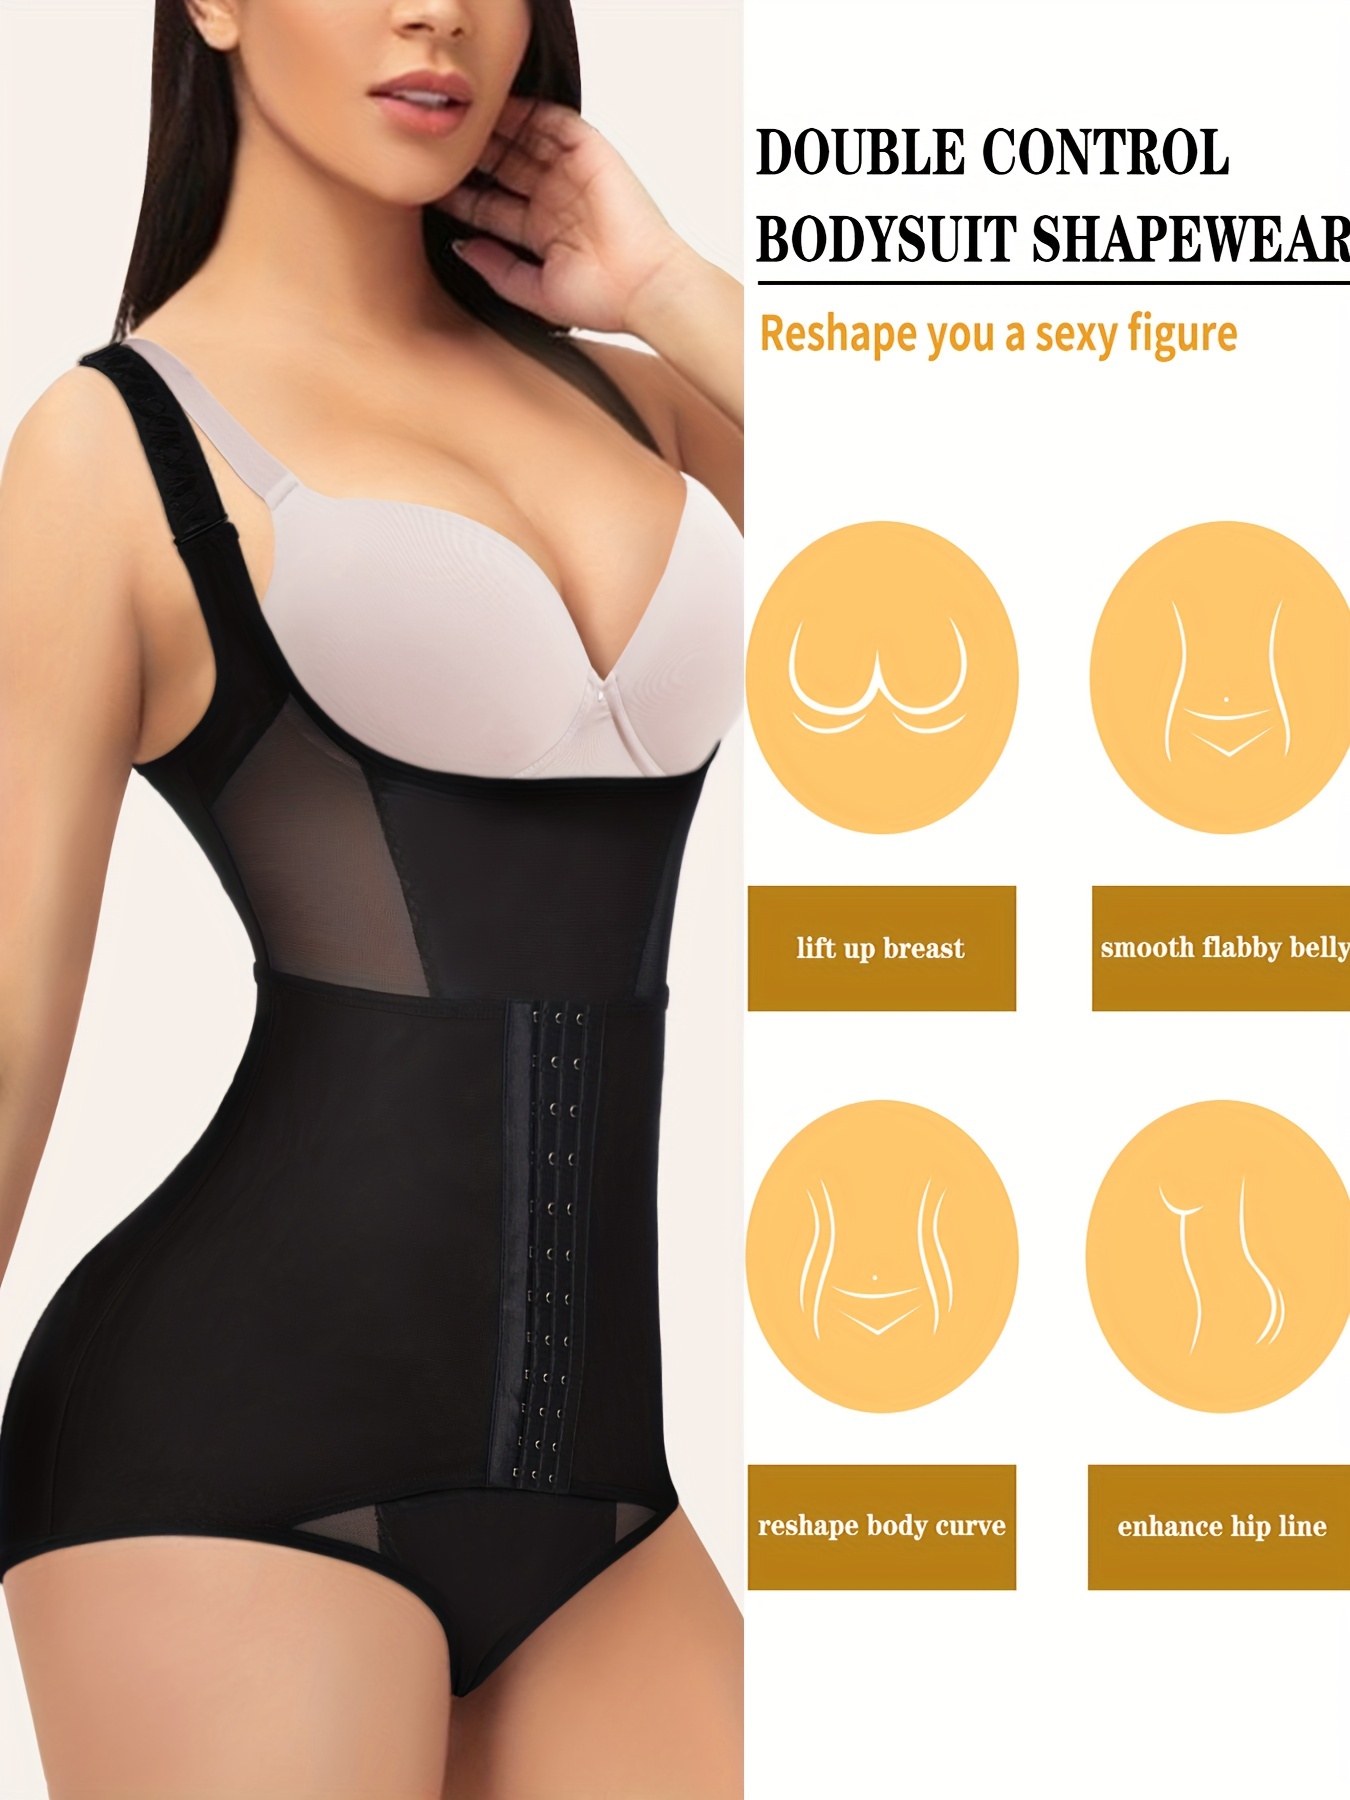 Breathable butt-lift and contour bodysuit - Estás bel